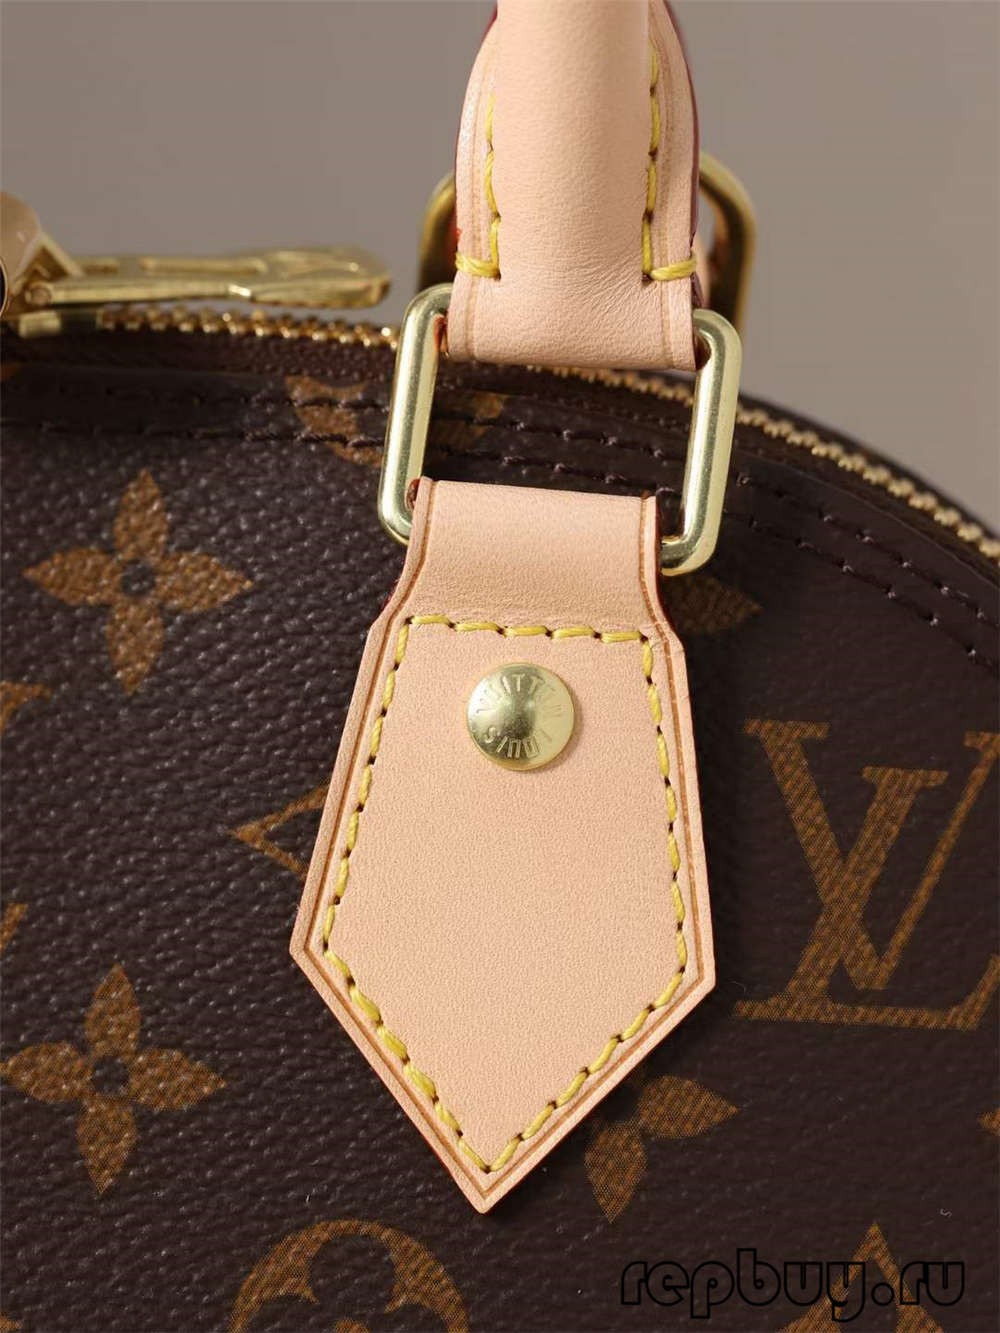 Louis Vuitton M53152 Alma BB תיקי העתק באיכות מעולה (2022 אחרונות)-האיכות הטובה ביותר מזויפת לואי ויטון תיק חנות מקוונת, העתק תיק מעצב ru